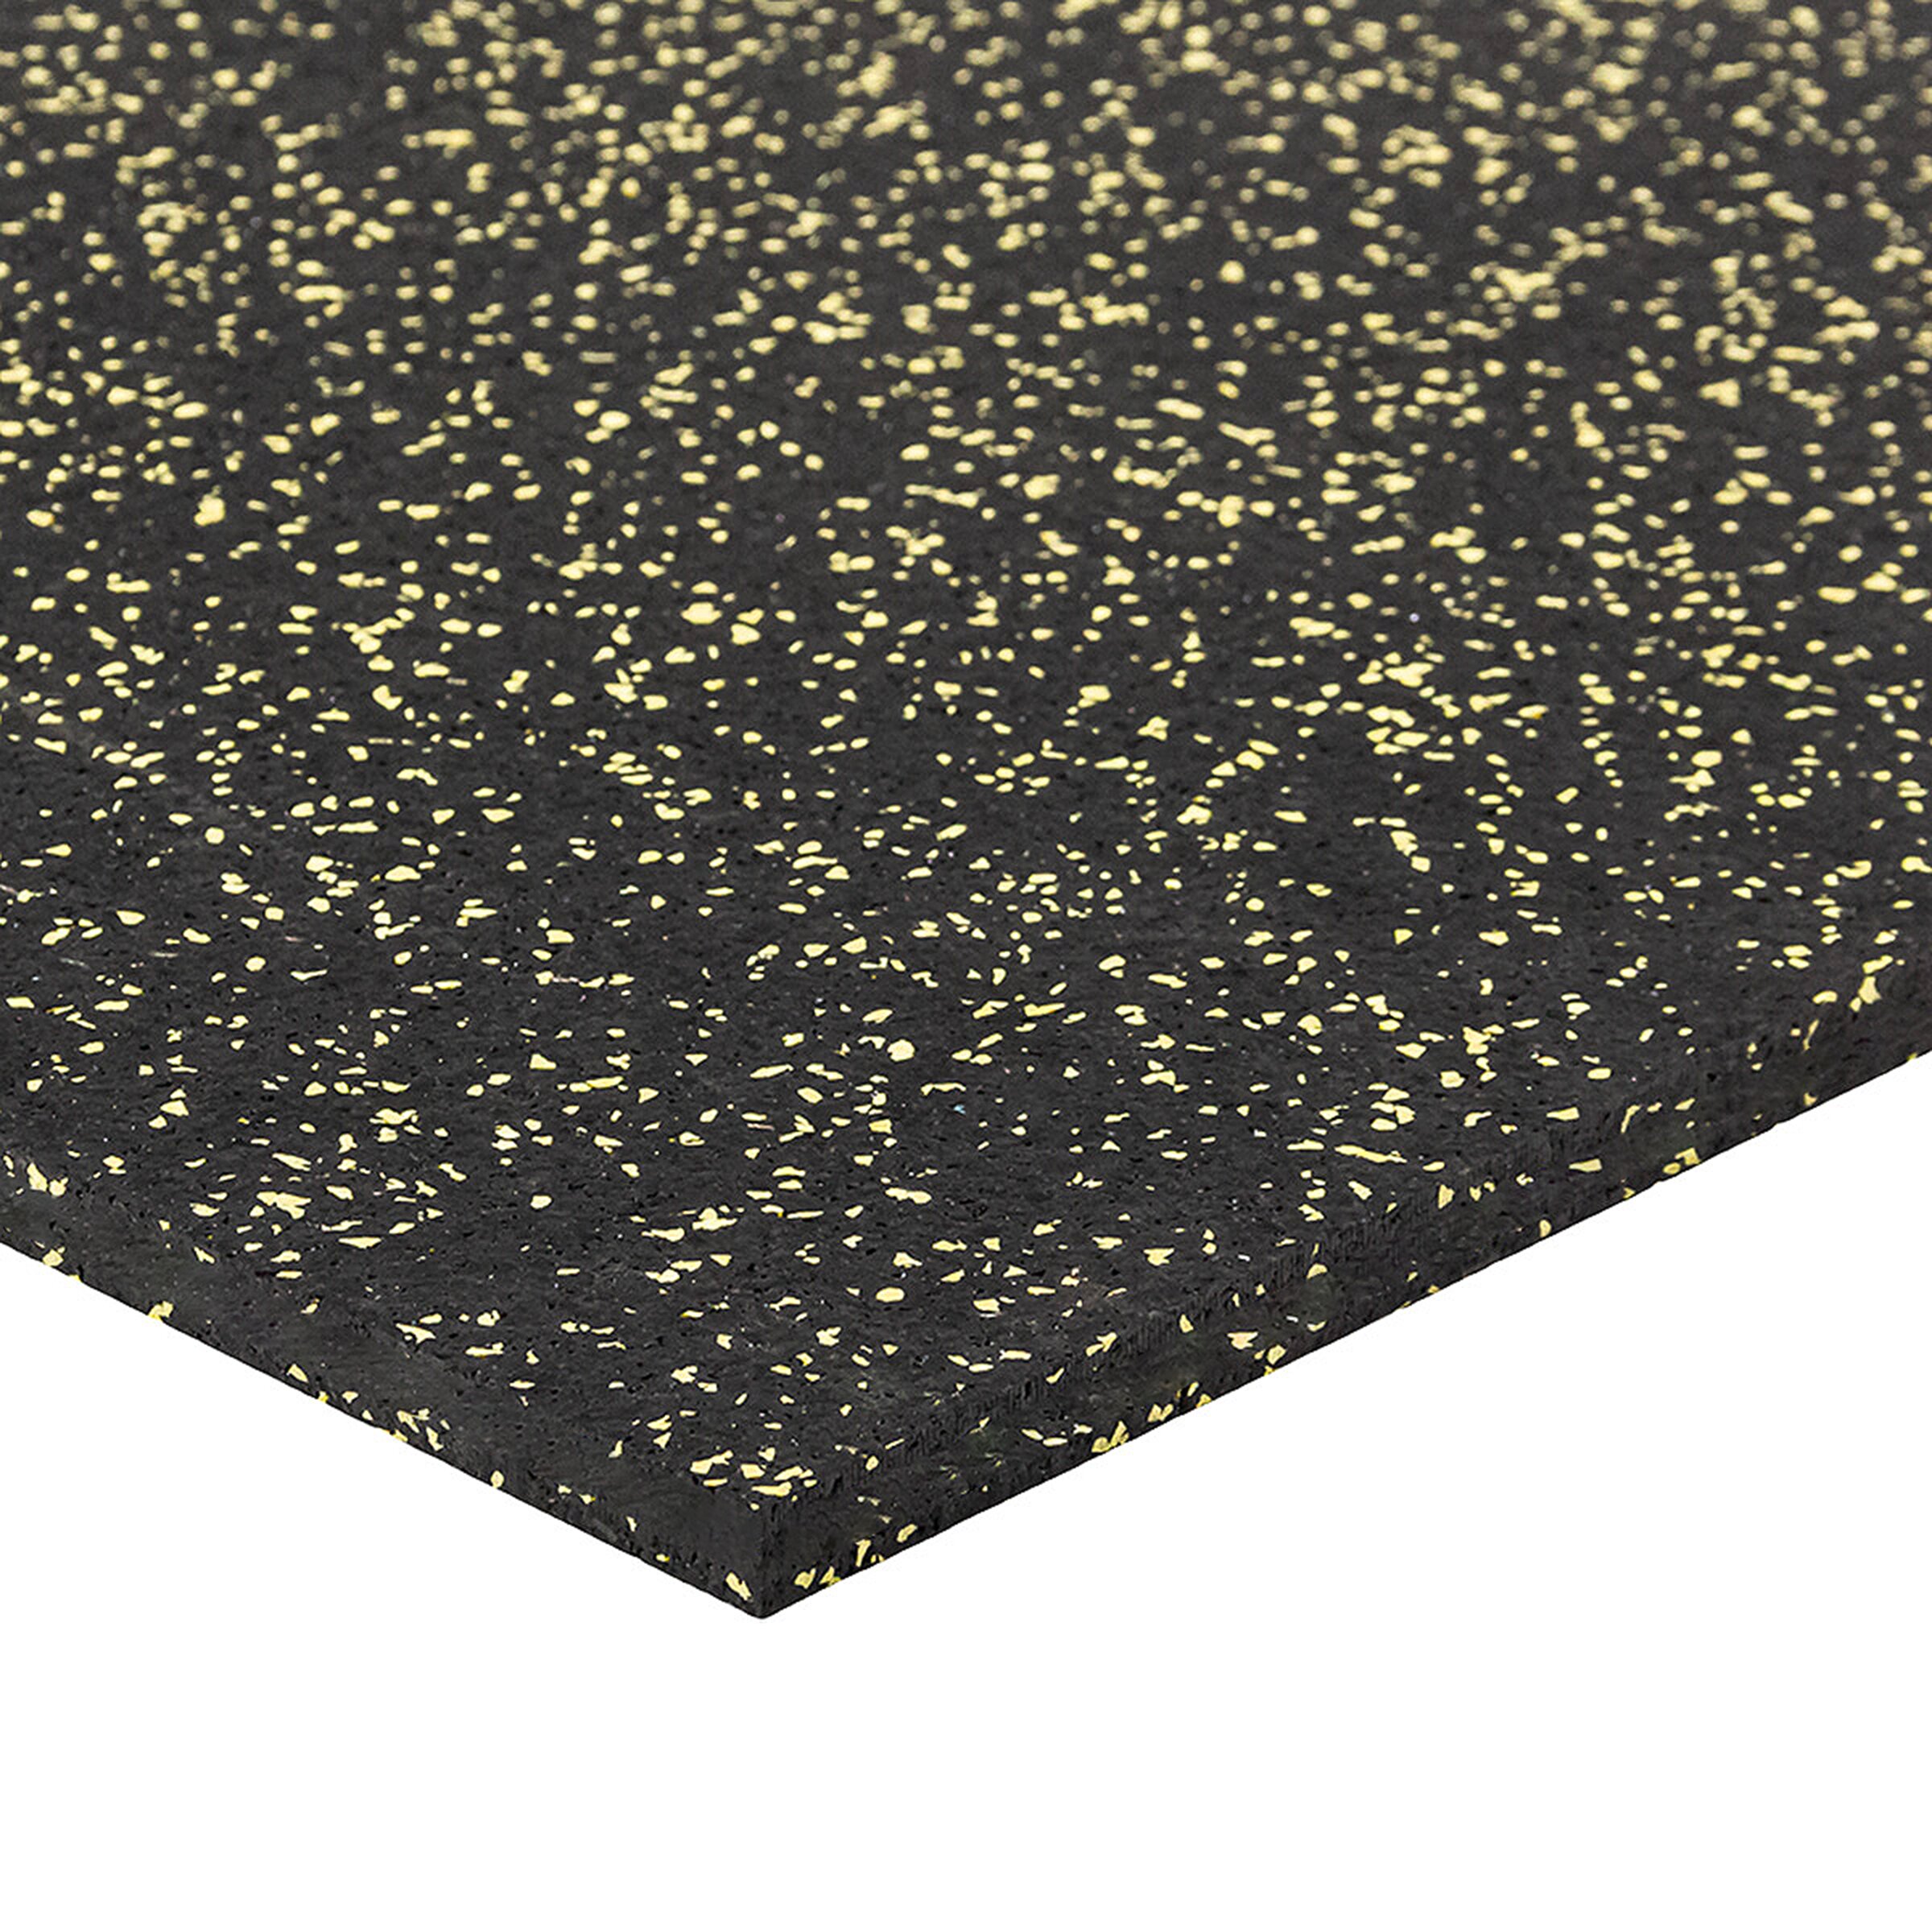 Černo-žlutá podlahová guma (puzzle - roh) FLOMA FitFlo SF1050 - délka 100 cm, šířka 100 cm, výška 1,6 cm